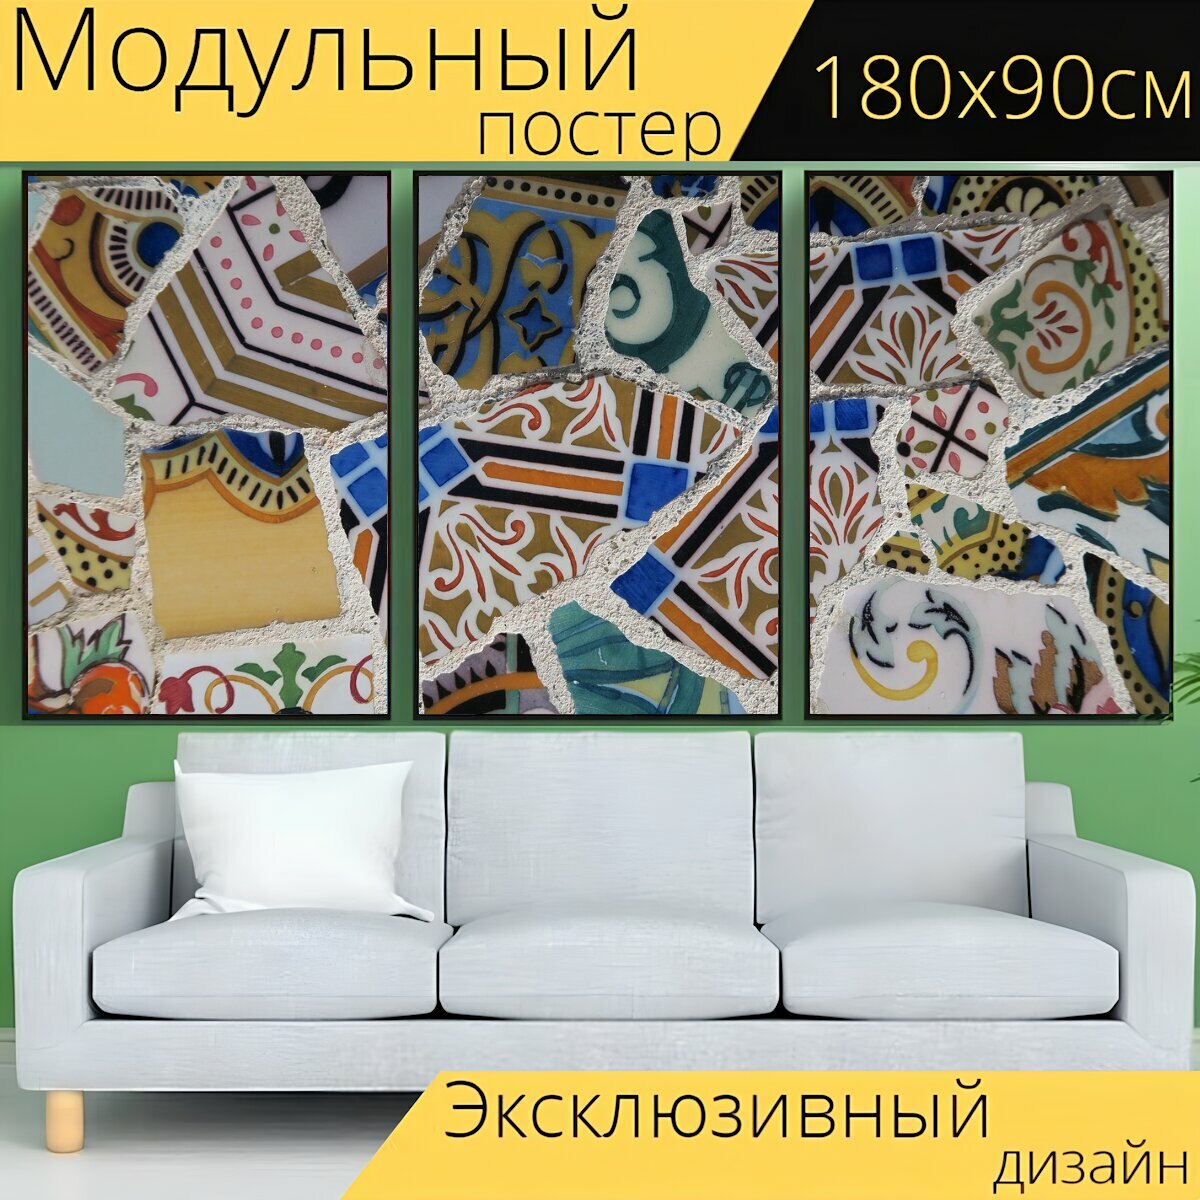 Модульный постер "Кафельная плитка, красить, шаблон" 180 x 90 см. для интерьера